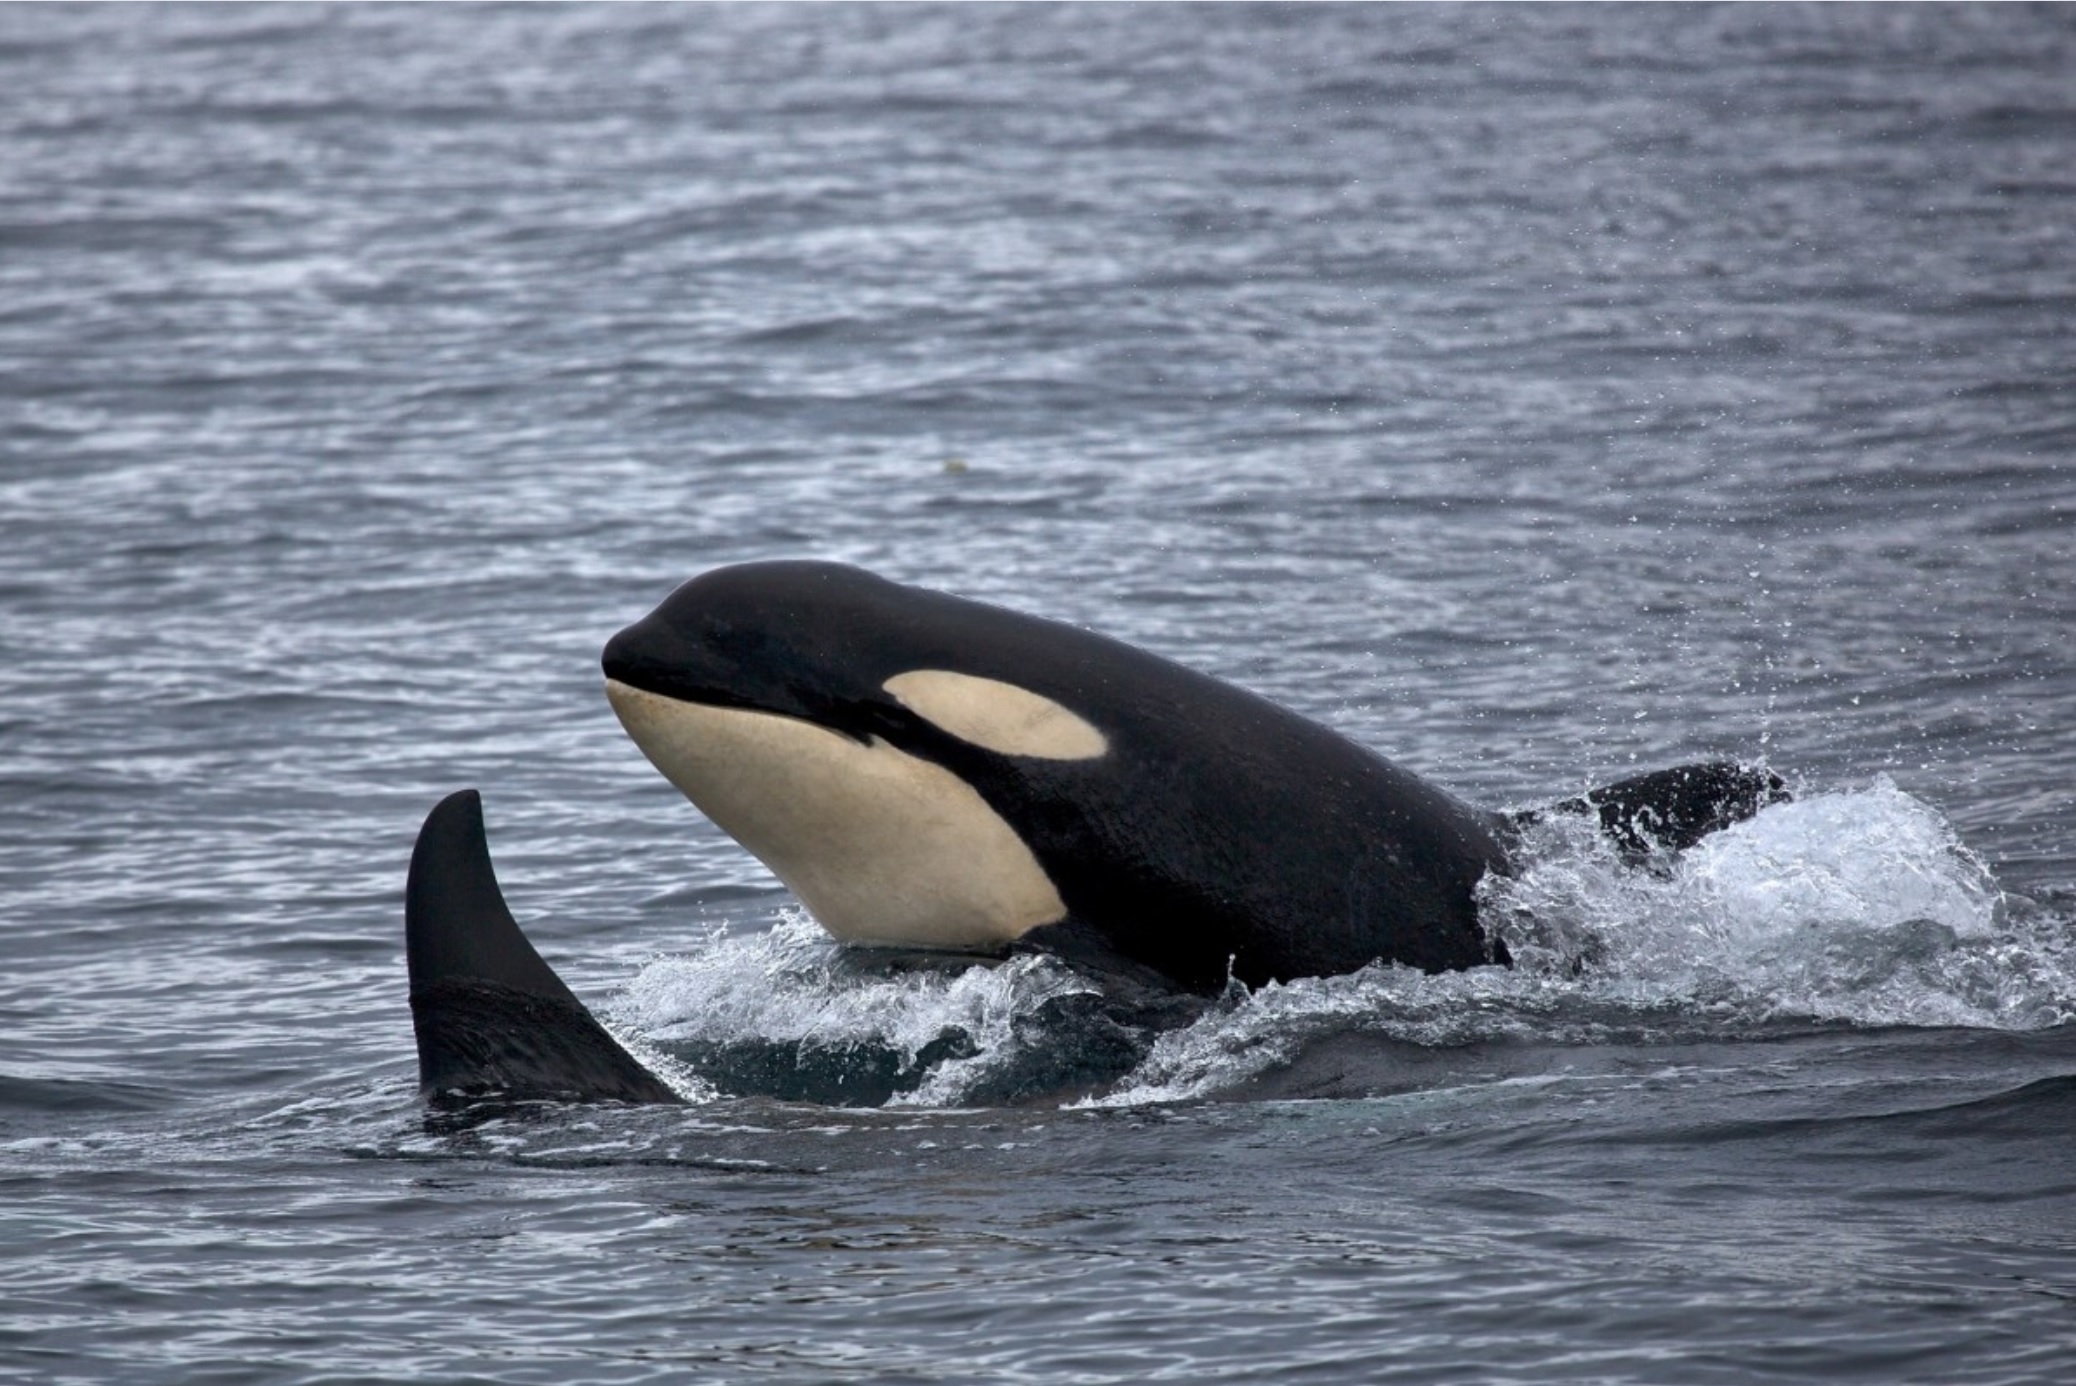 [ 🐬 Pour bien commencer la semaine : savez-vous pourquoi les orques sont de couleur noire et blanche ? ]